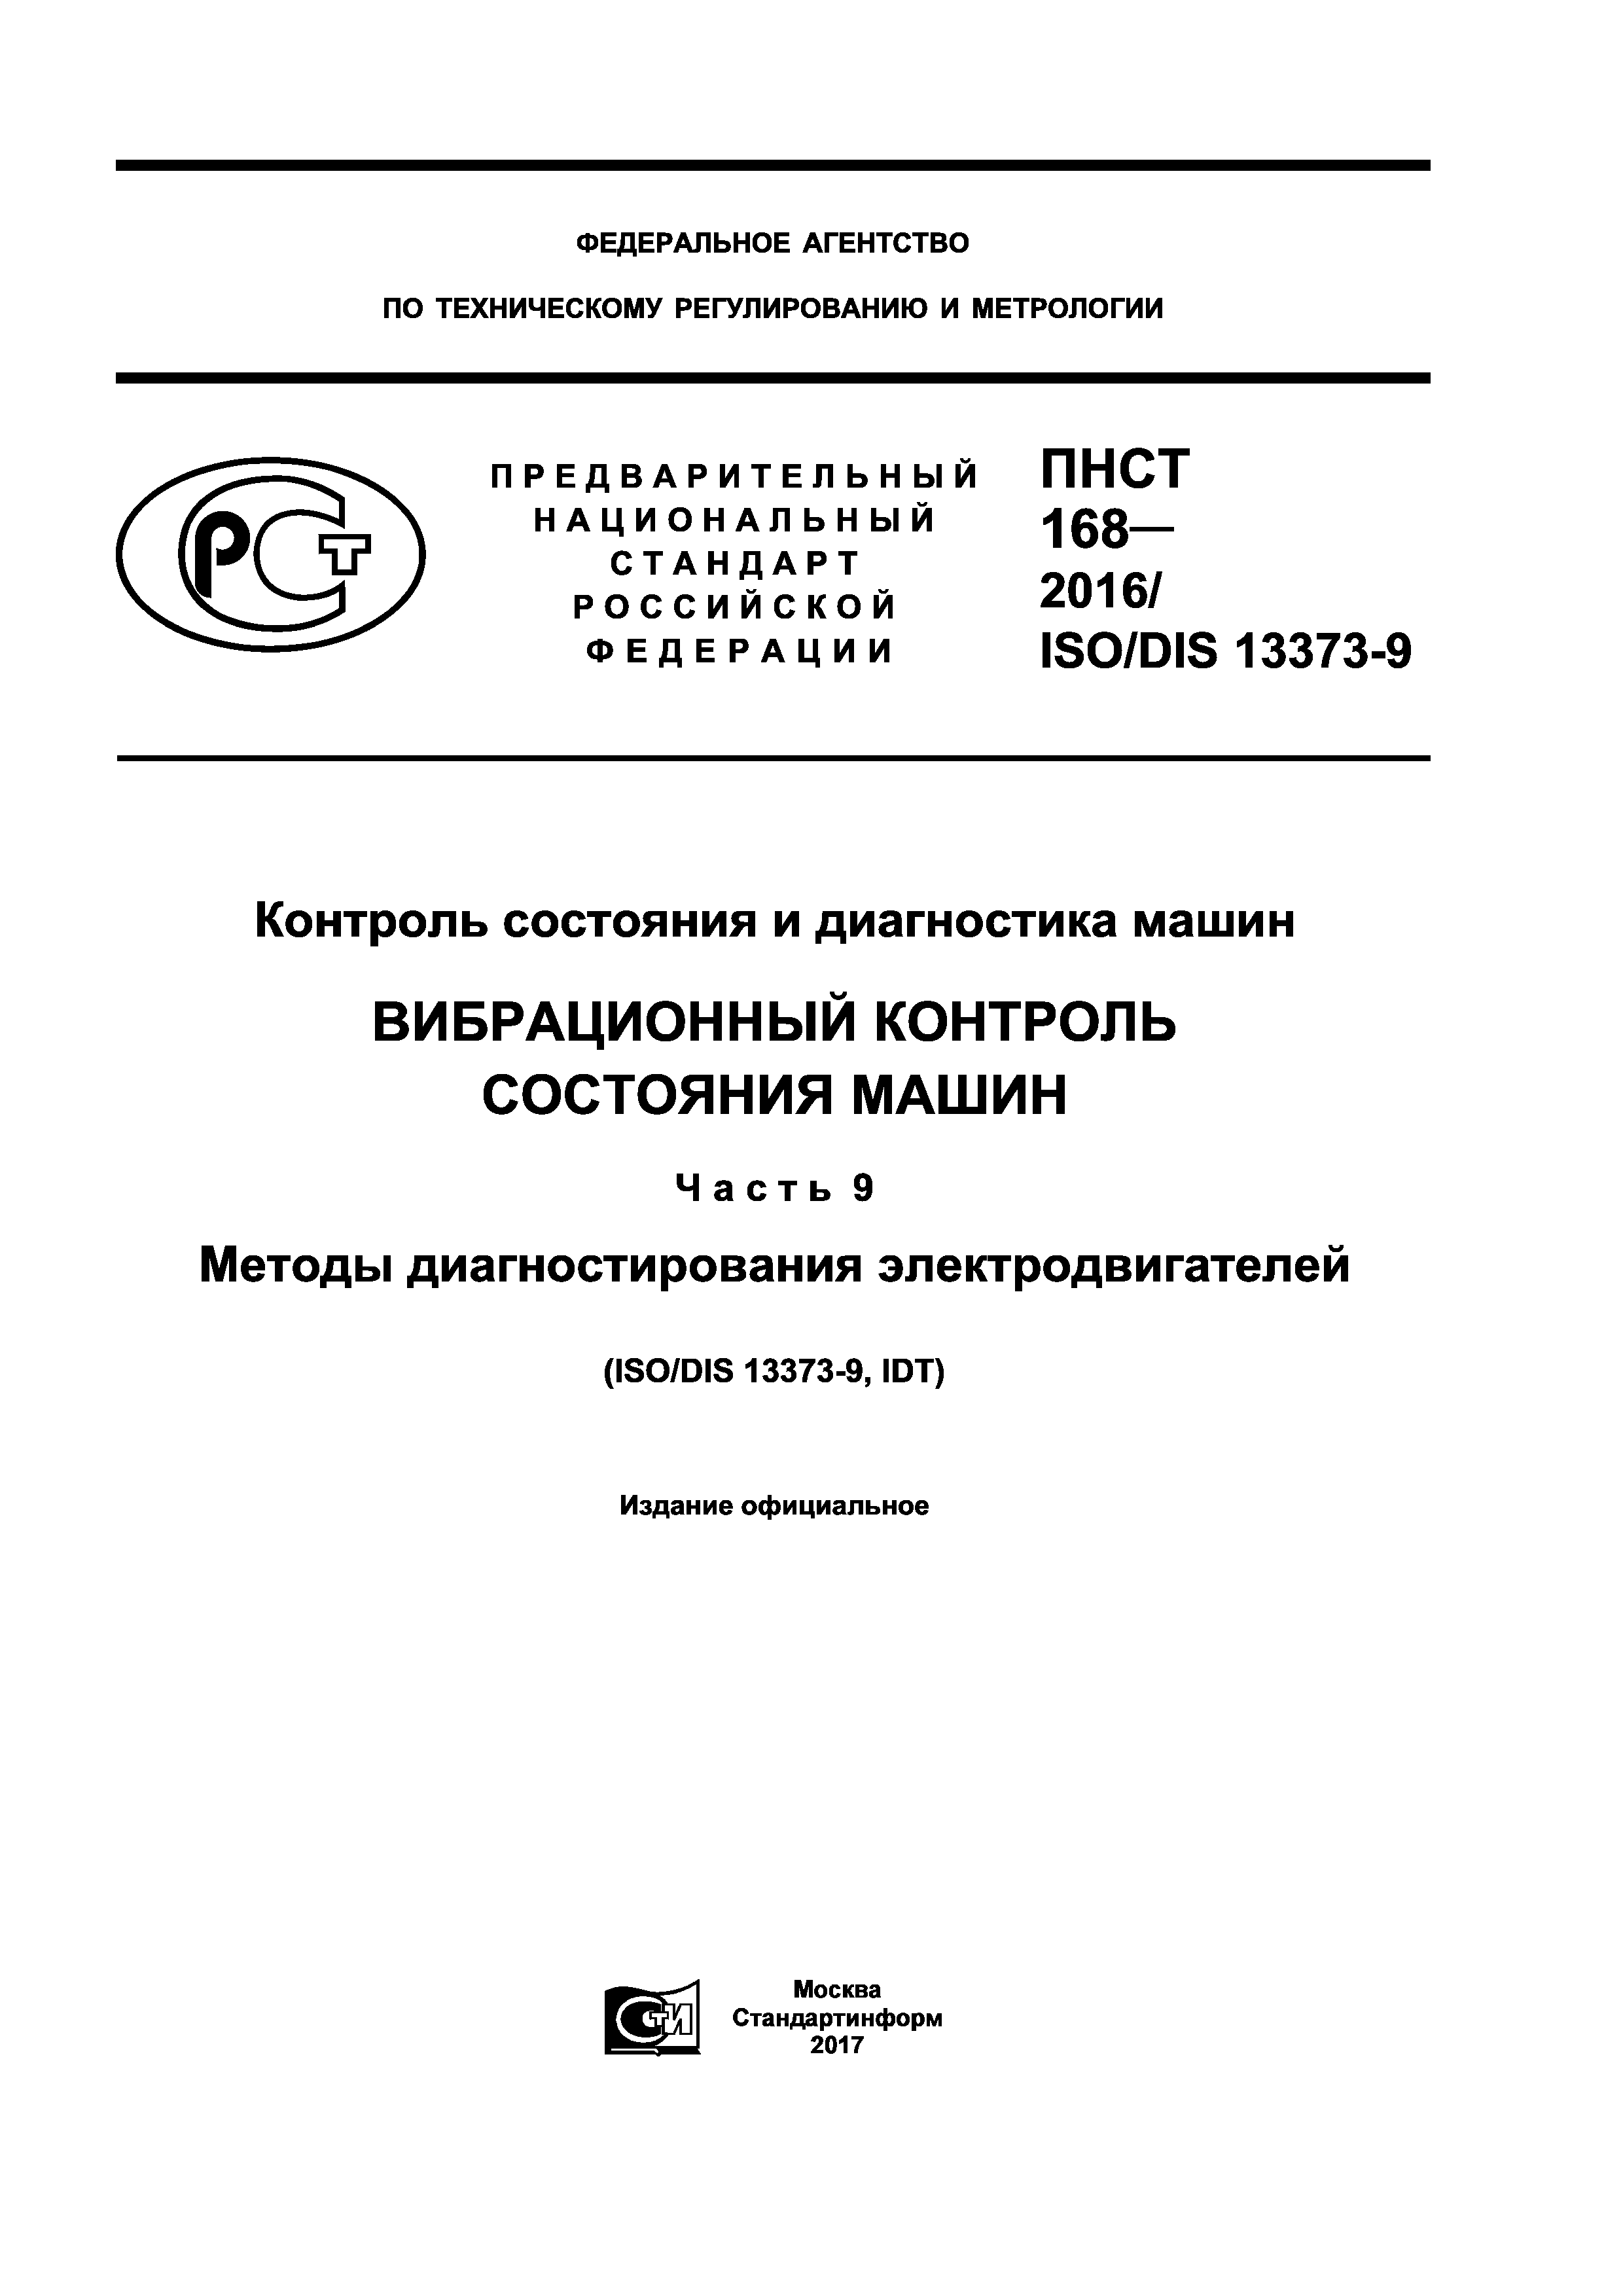 ПНСТ 168-2016